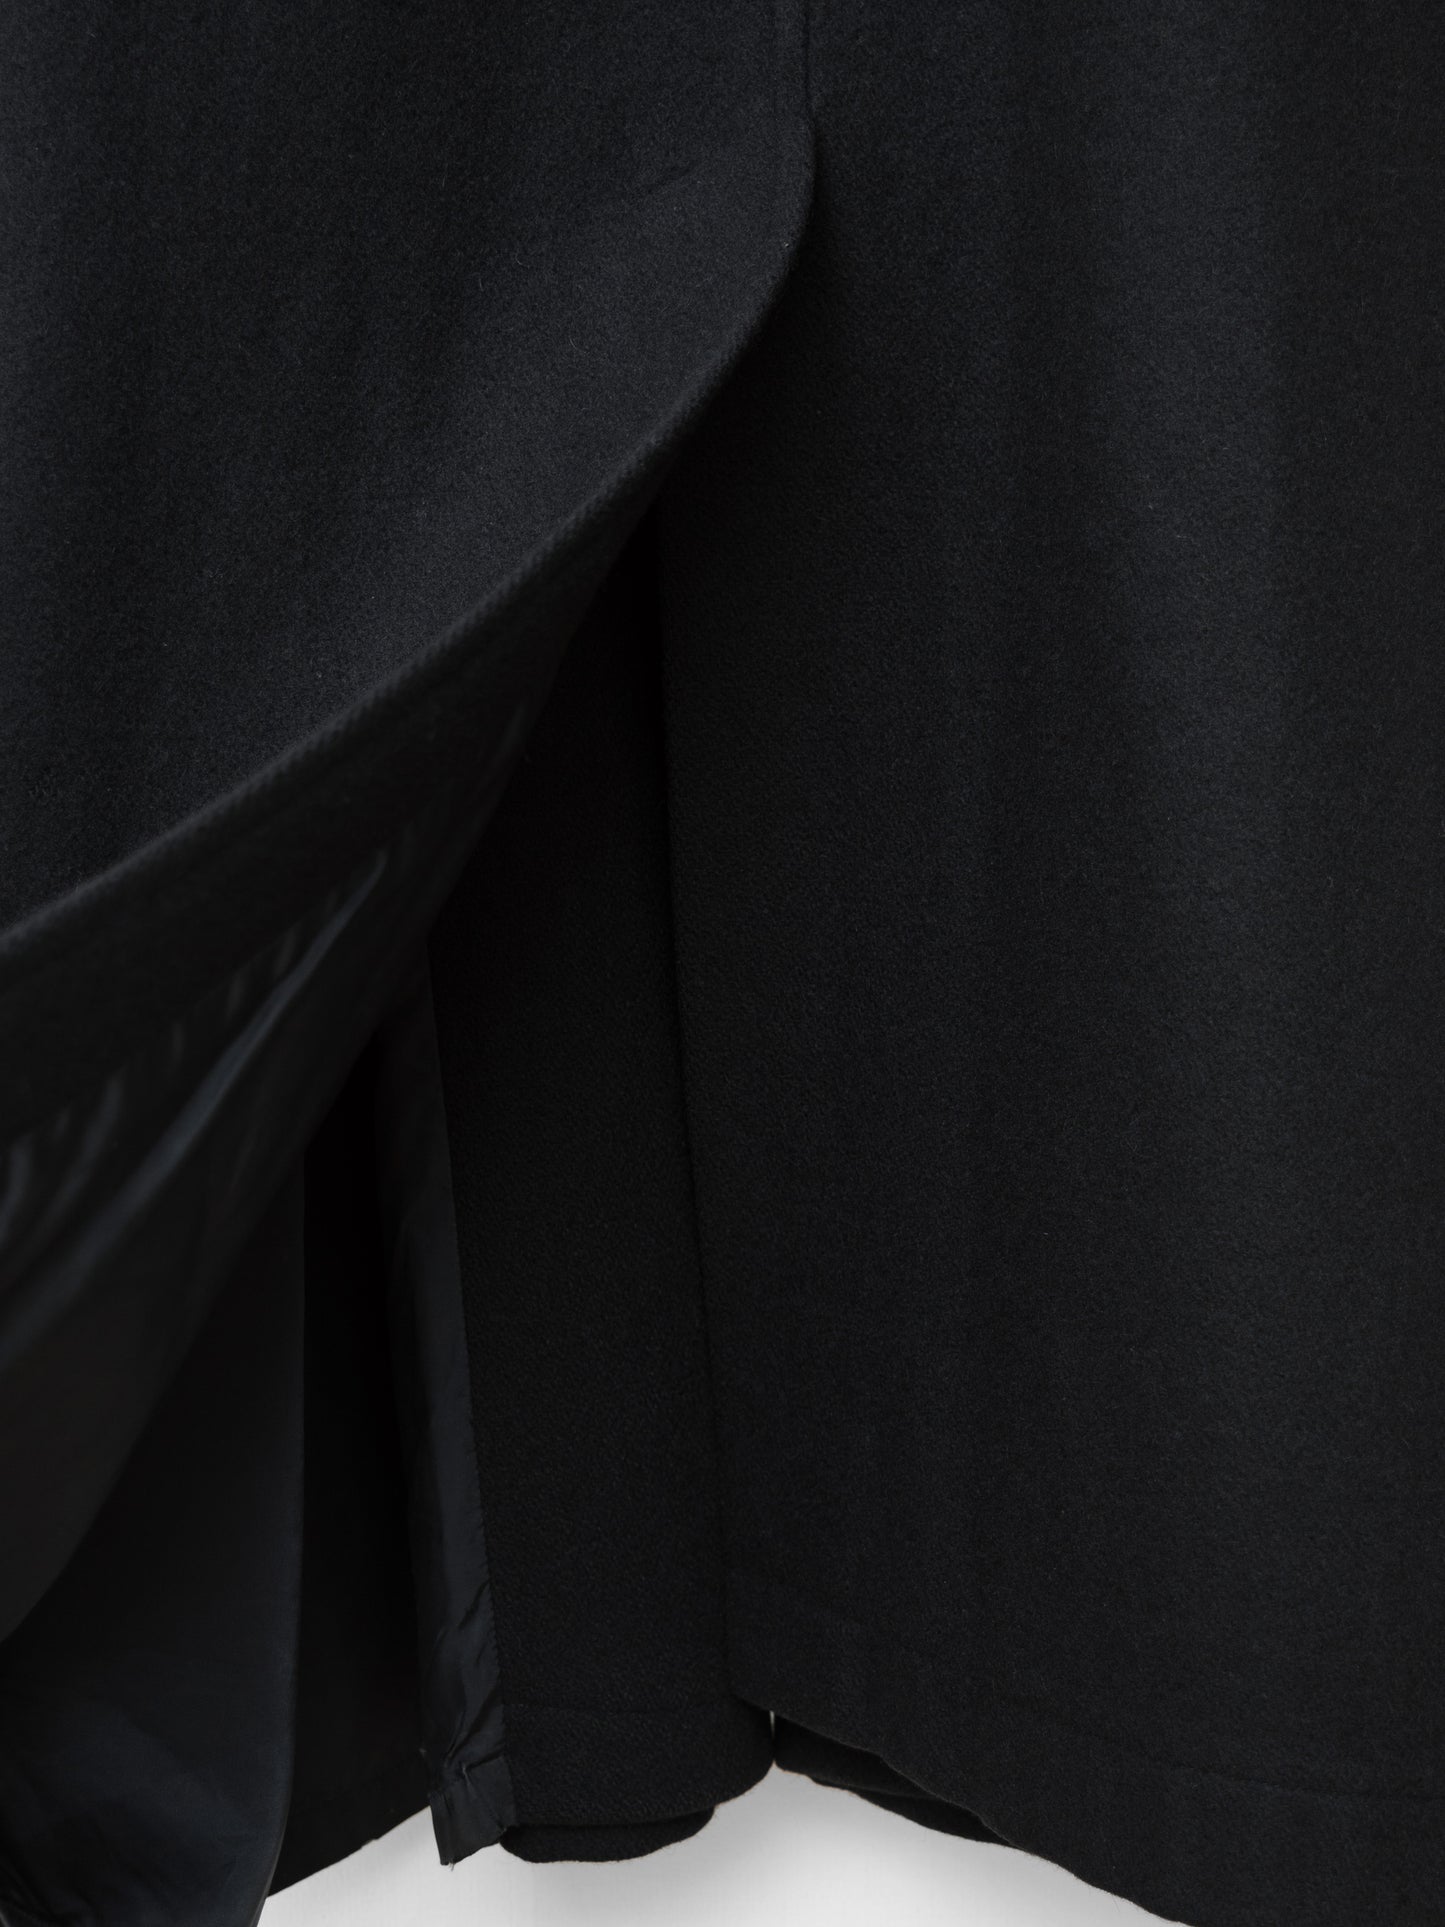 raglan mac coat black ∙ melton wool nylon ∙ medium